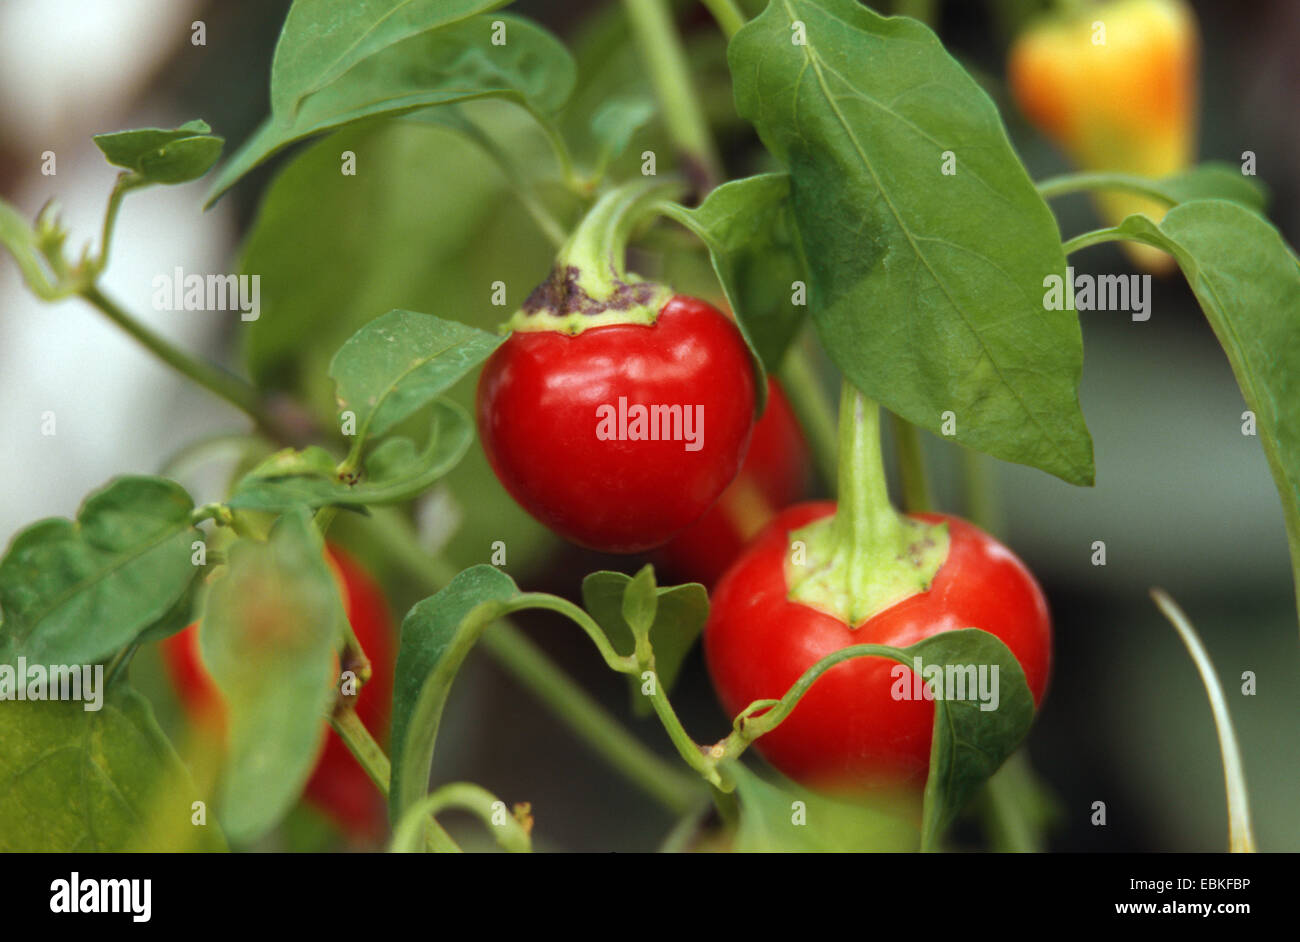 Red pepper, paprika (Capsicum chinense 'Biberiye', Capsicum chinense Biberiye), fruits of cultivar Biberiye Stock Photo